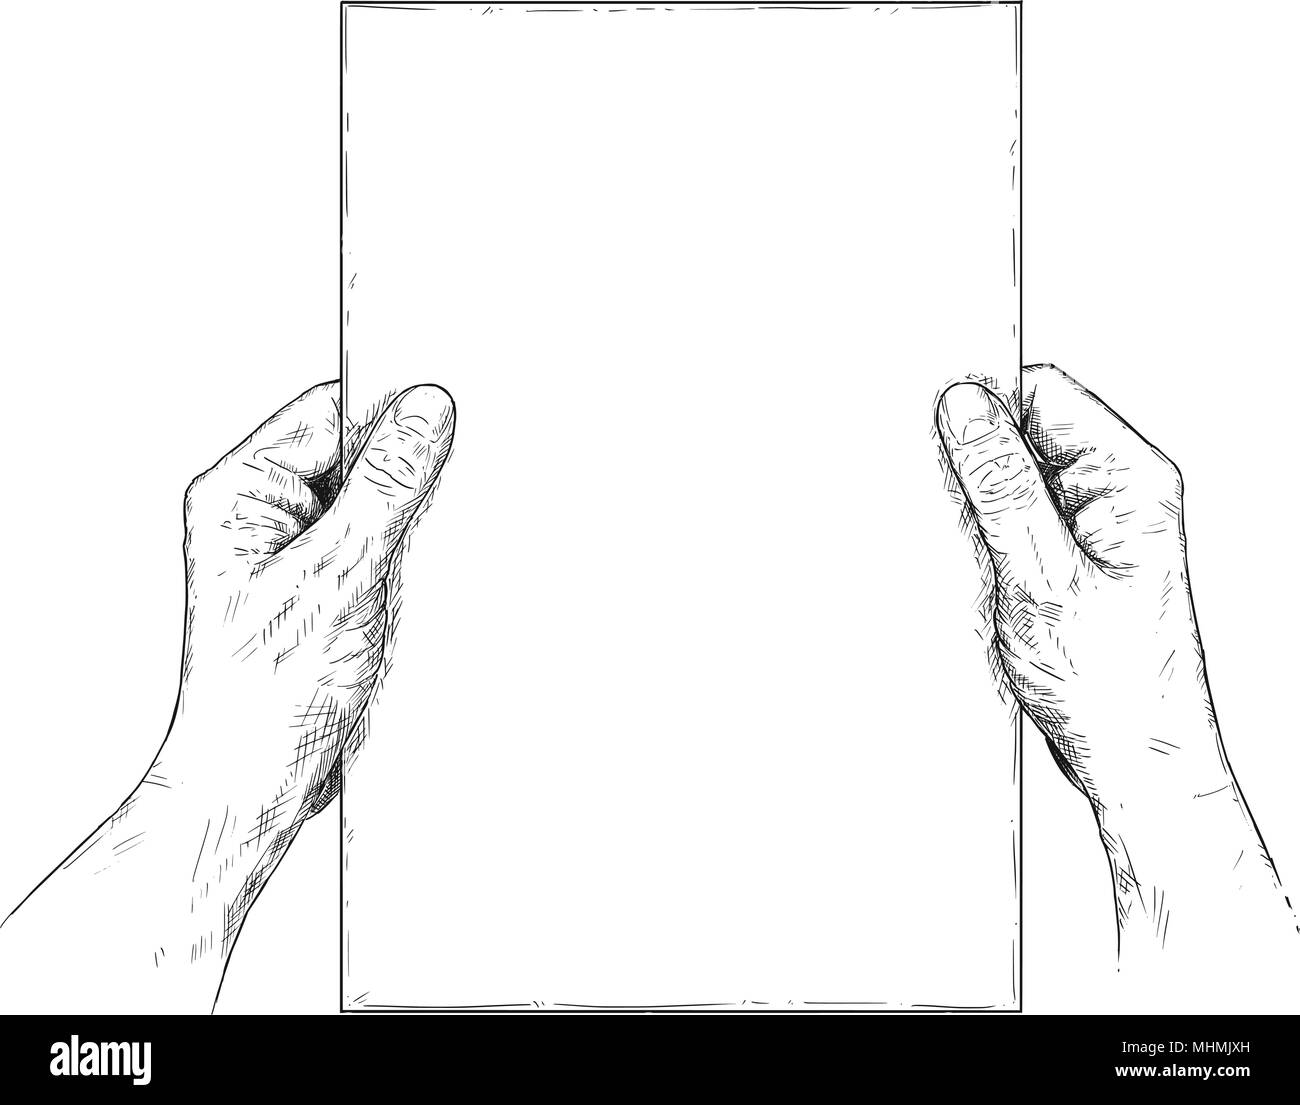 Vettore Illustrazione Artistica O Disegno Di Mani Foglio Di Carta Bianco Immagine E Vettoriale Alamy